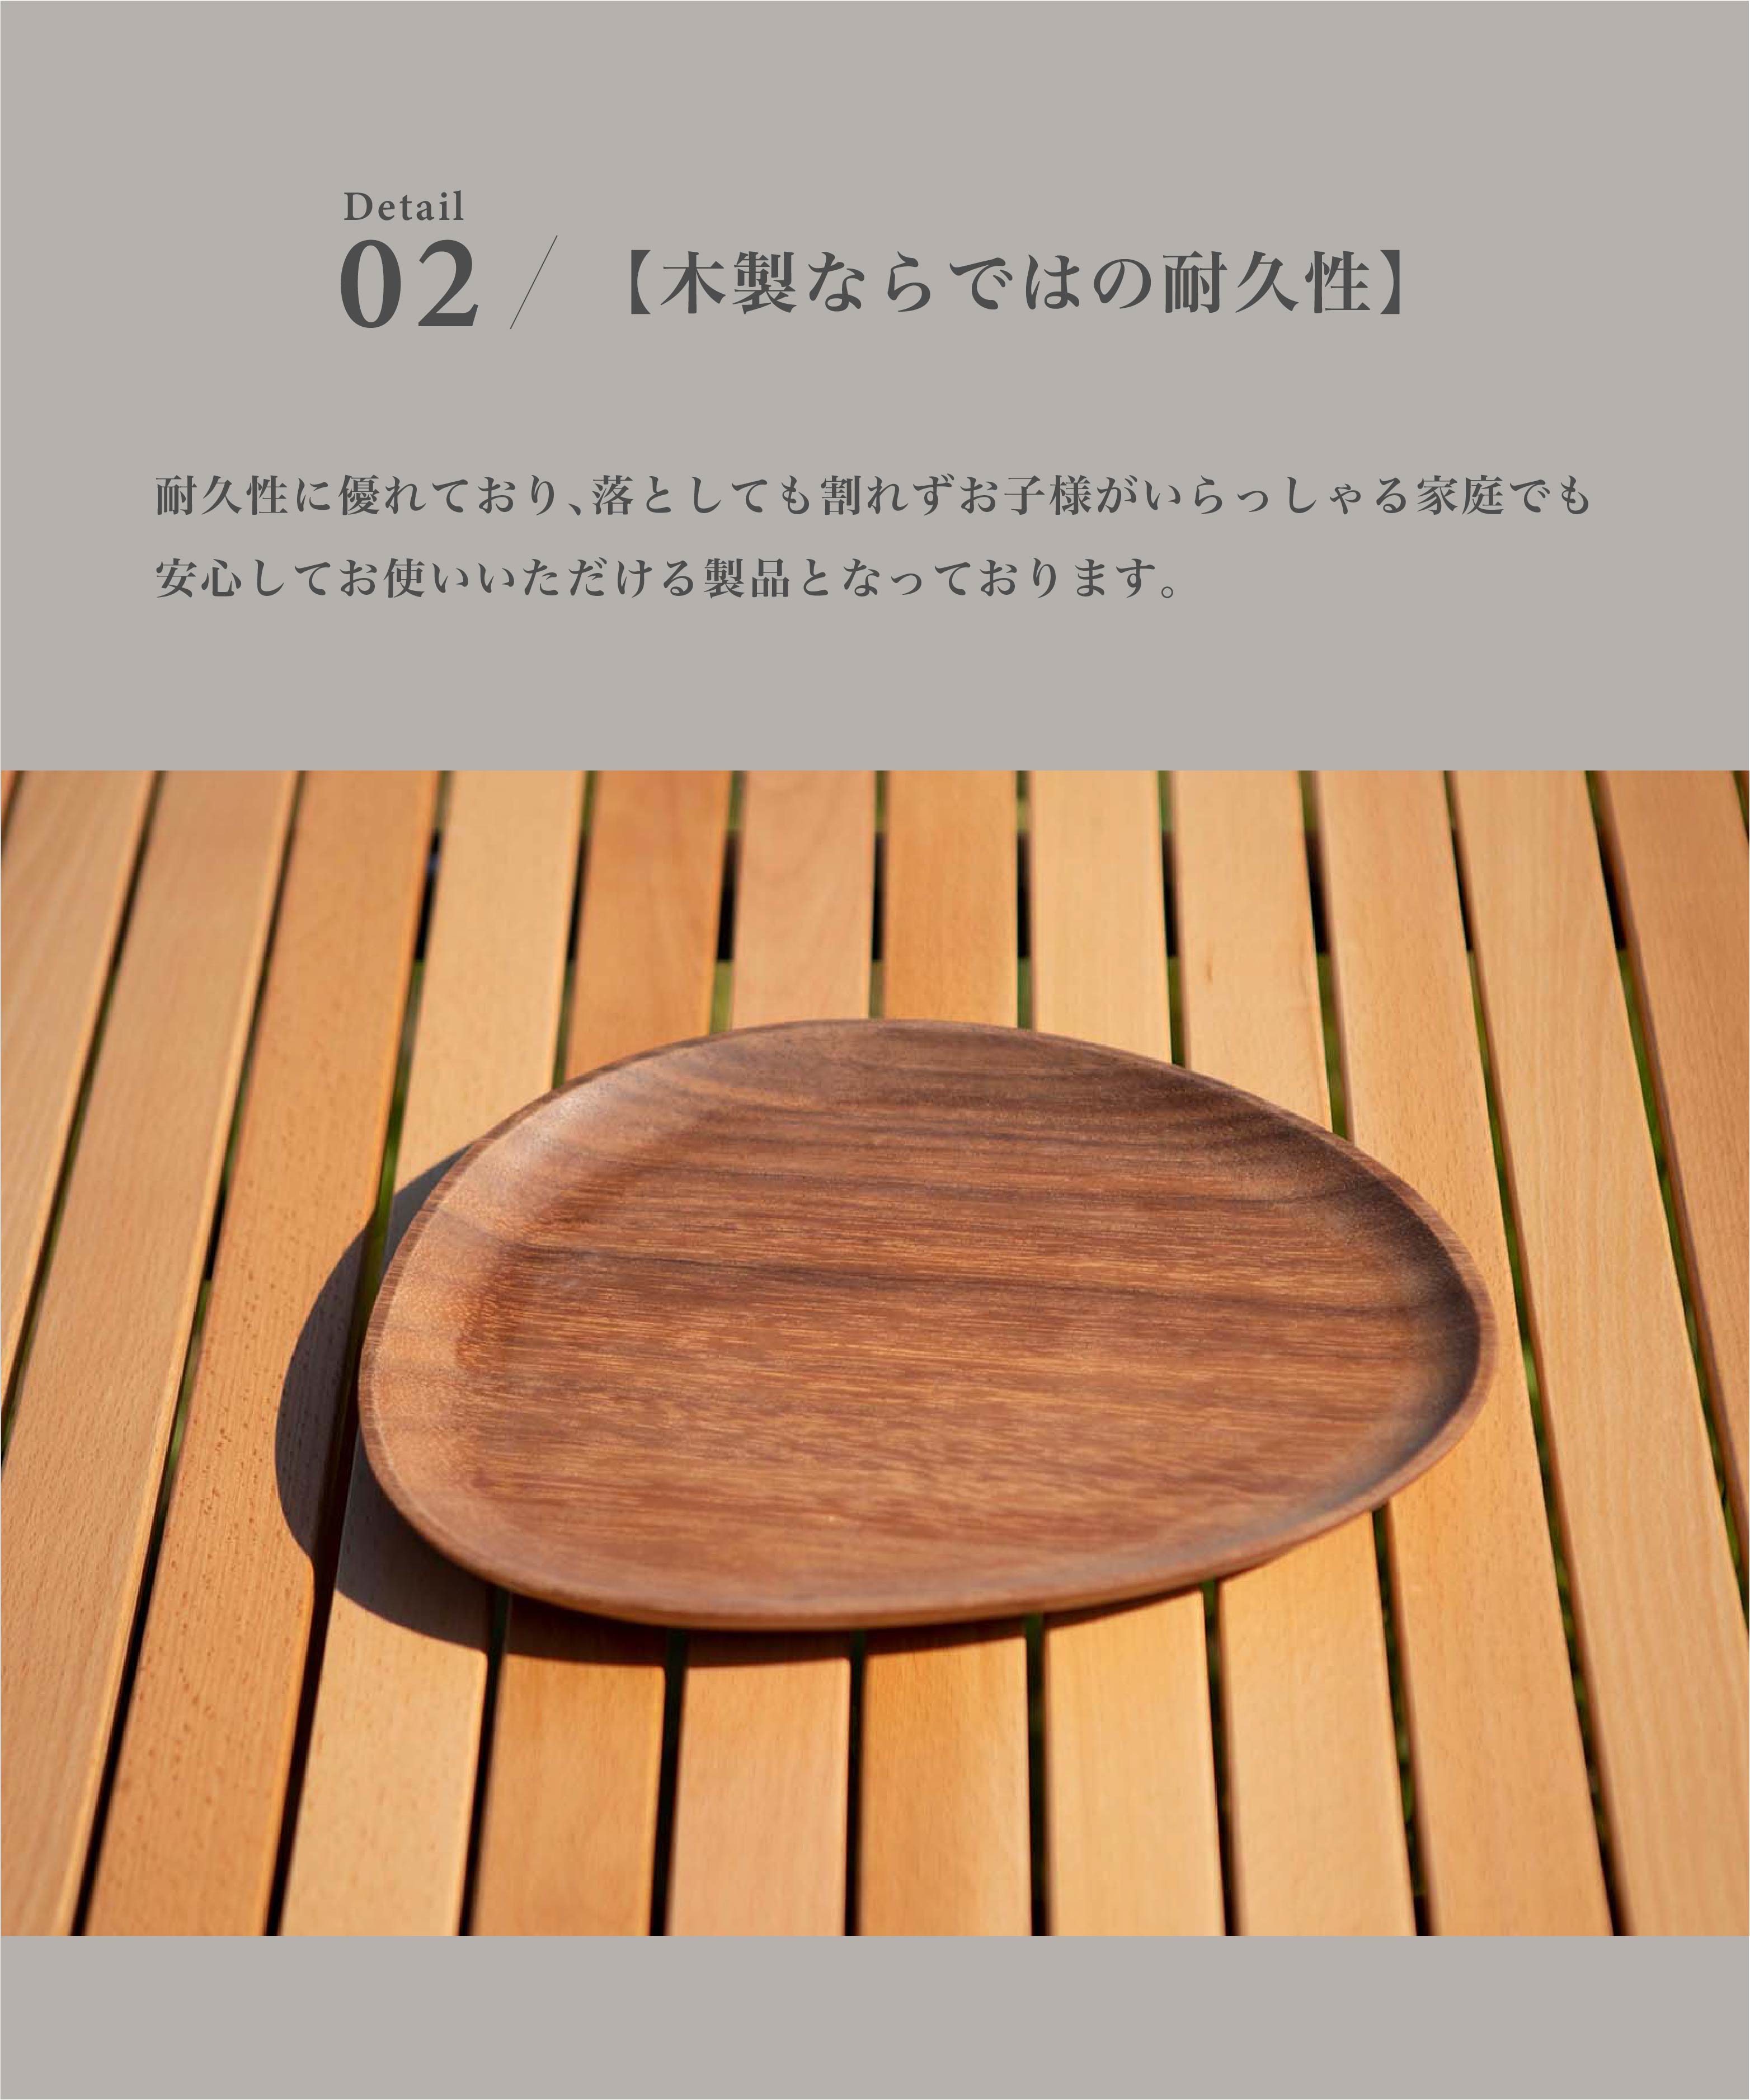 スモア Woodi plate 30*20